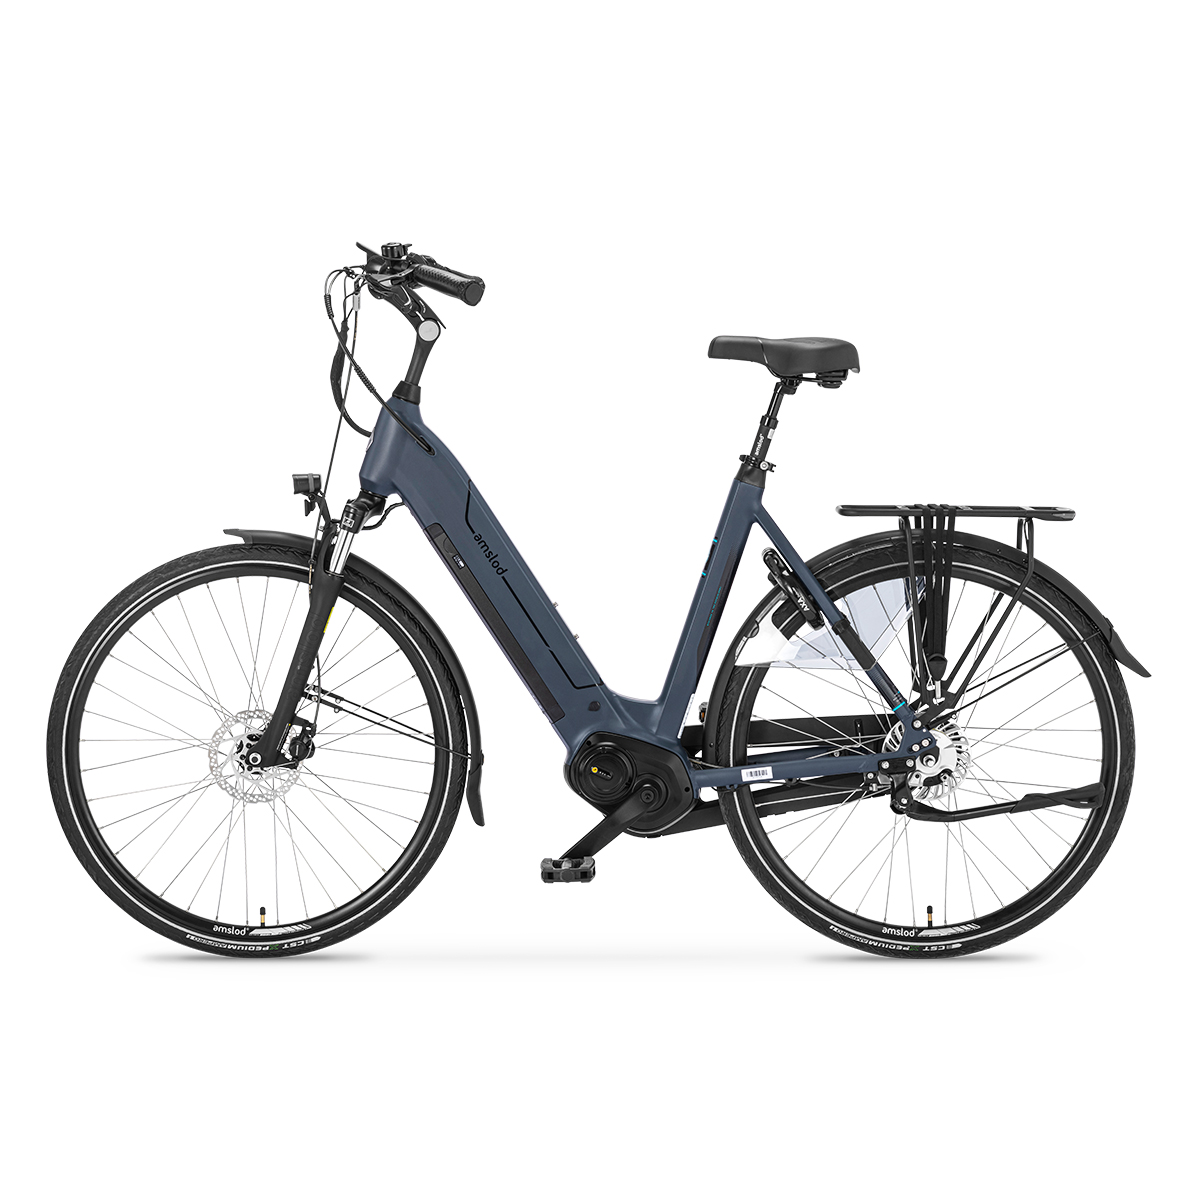 Afbeelding Amslod elektrische fiets active max hedon amslod fietsen 4